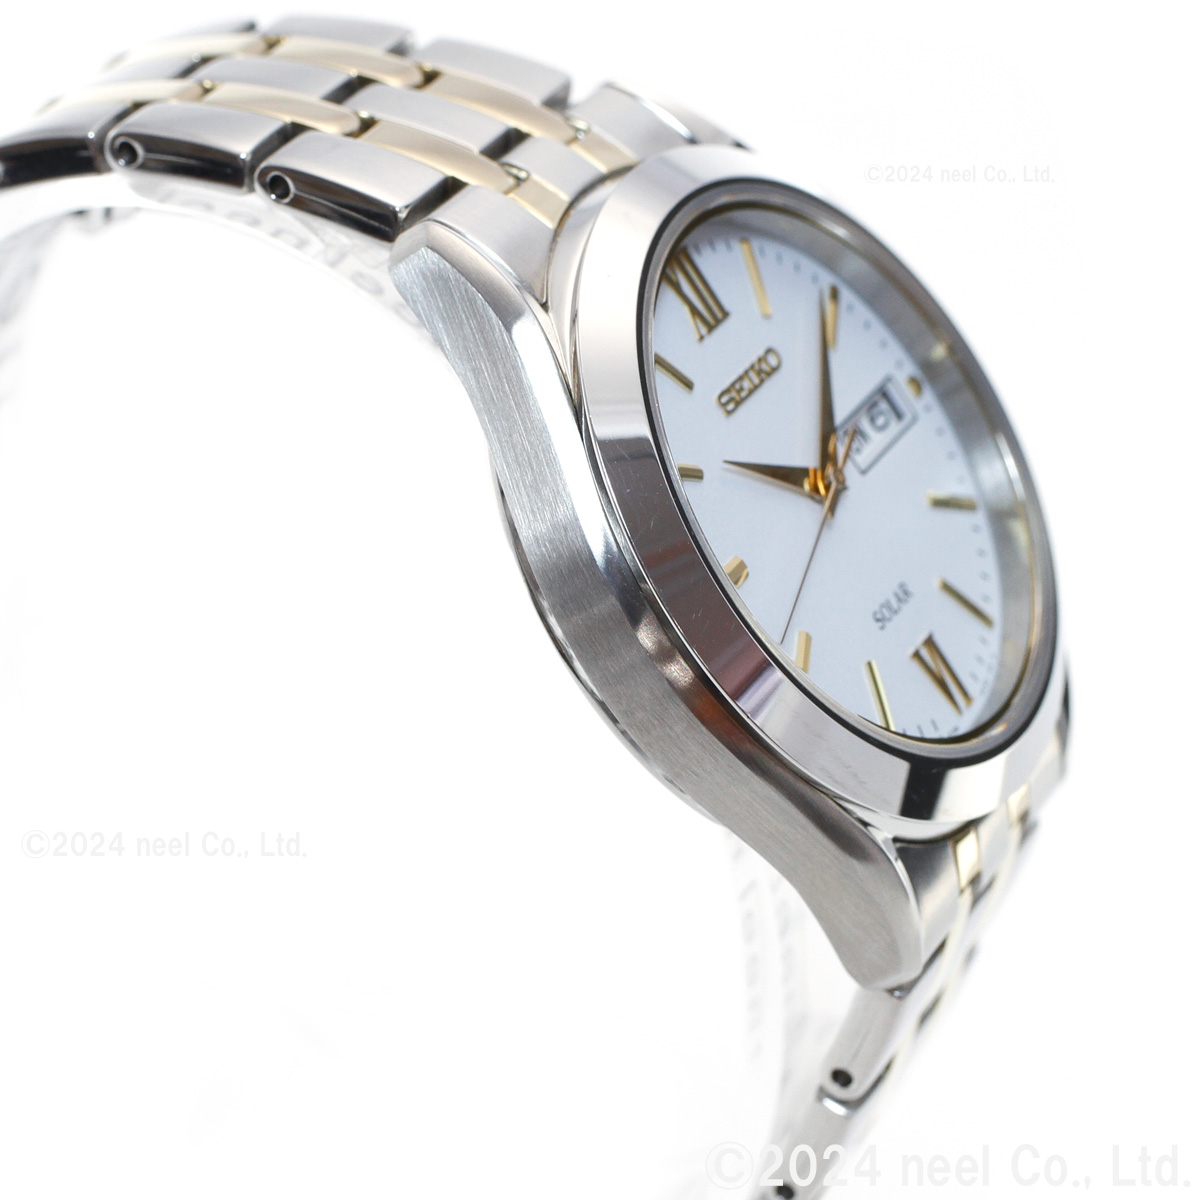 セイコー セレクション ソーラー 腕時計 メンズ ペアウォッチ SBPX085 